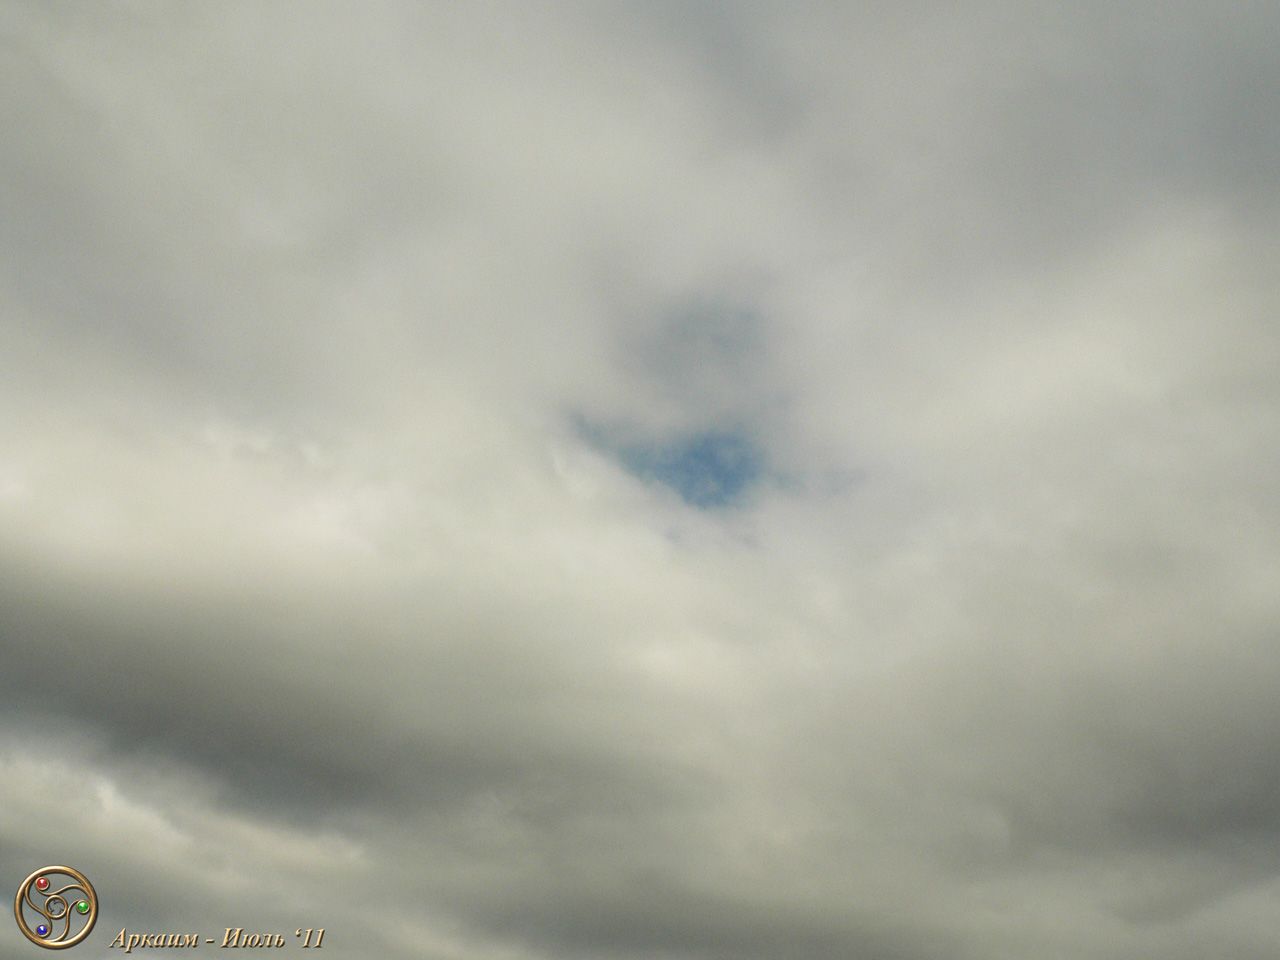 16/07/2011 11:37 - После Теургического действия образовалась дыра в облаках напоминающая полет орла - Фоторепортаж: Аркаим, 14-17 июля 2011г.